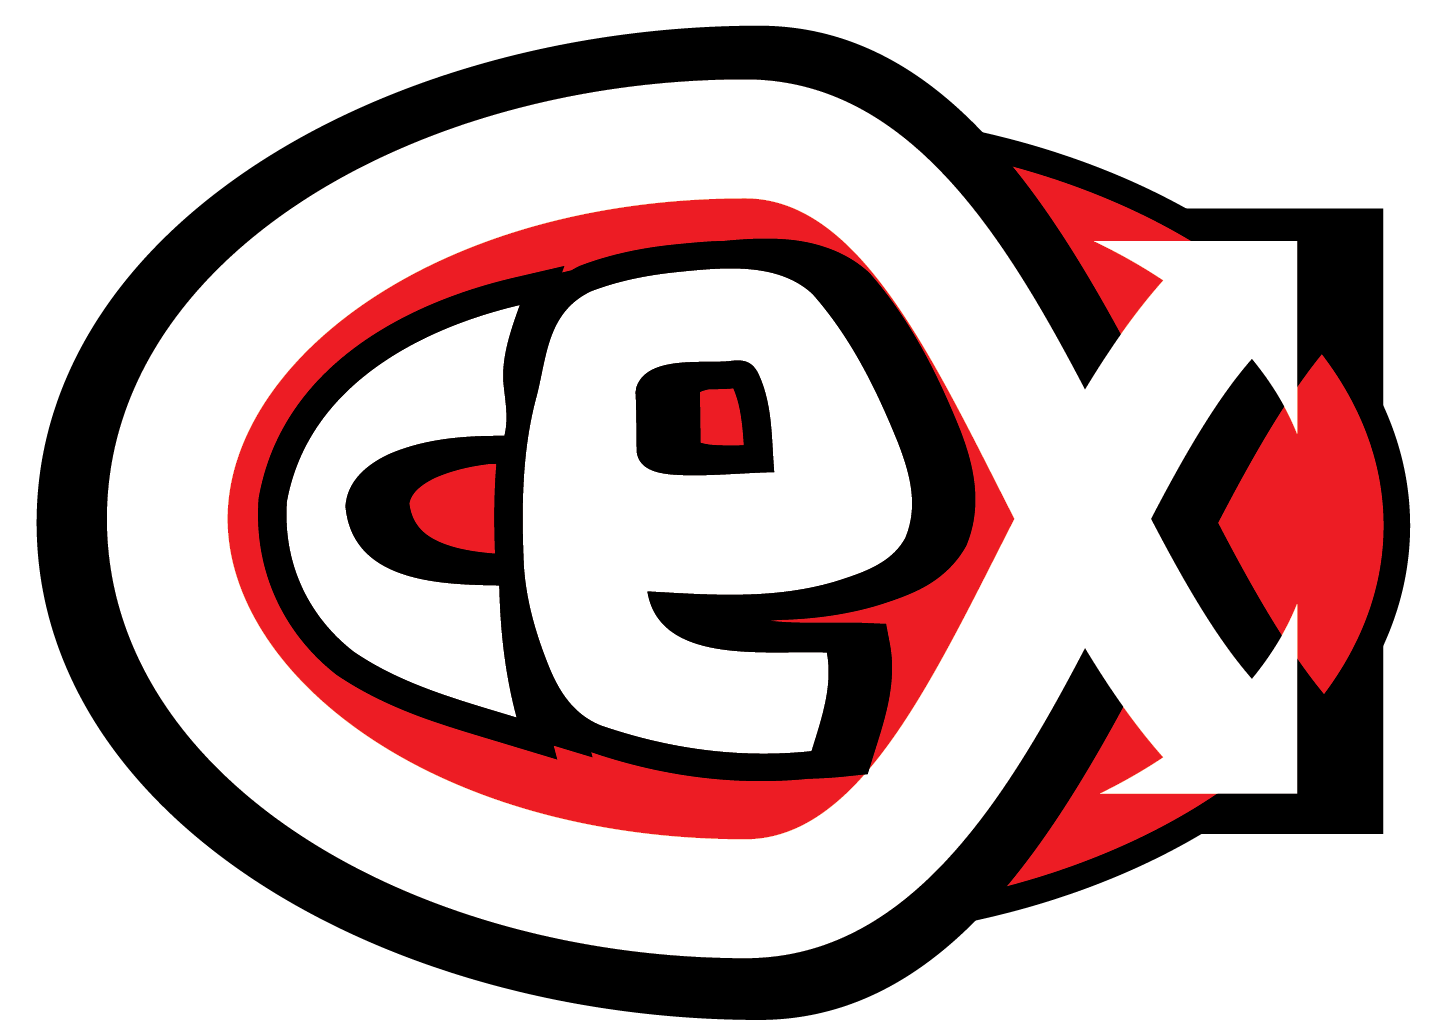 CeX Logo - Cex logo - Citystay